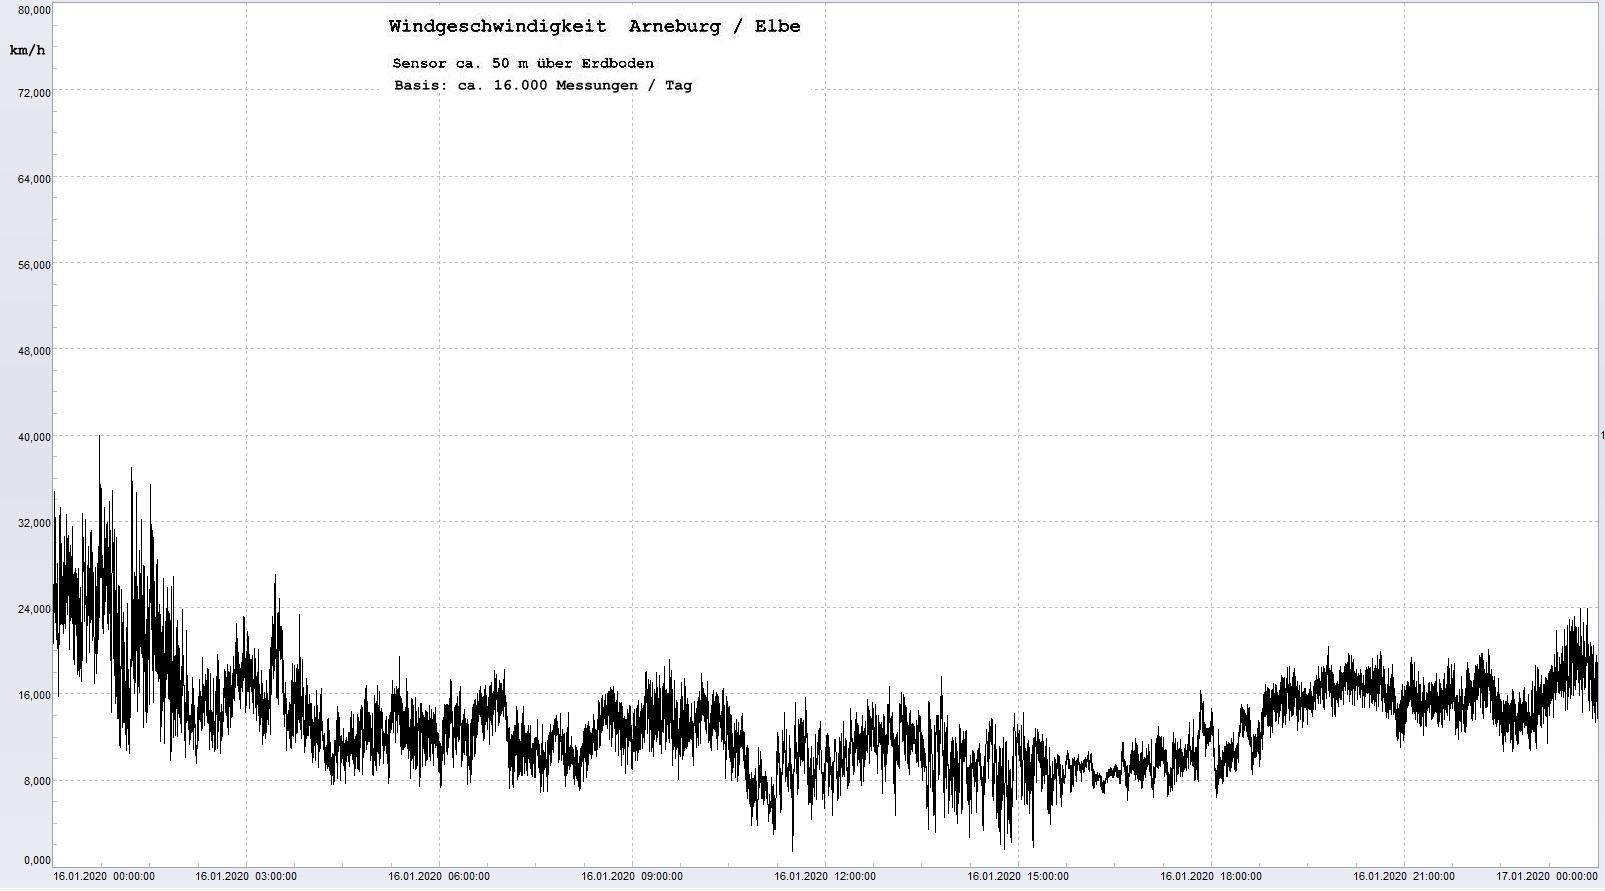 Arneburg Tages-Diagramm Winddaten, 16.01.2020
  Histogramm, Sensor auf Gebude, ca. 50 m ber Erdboden, Basis: 5s-Aufzeichnung